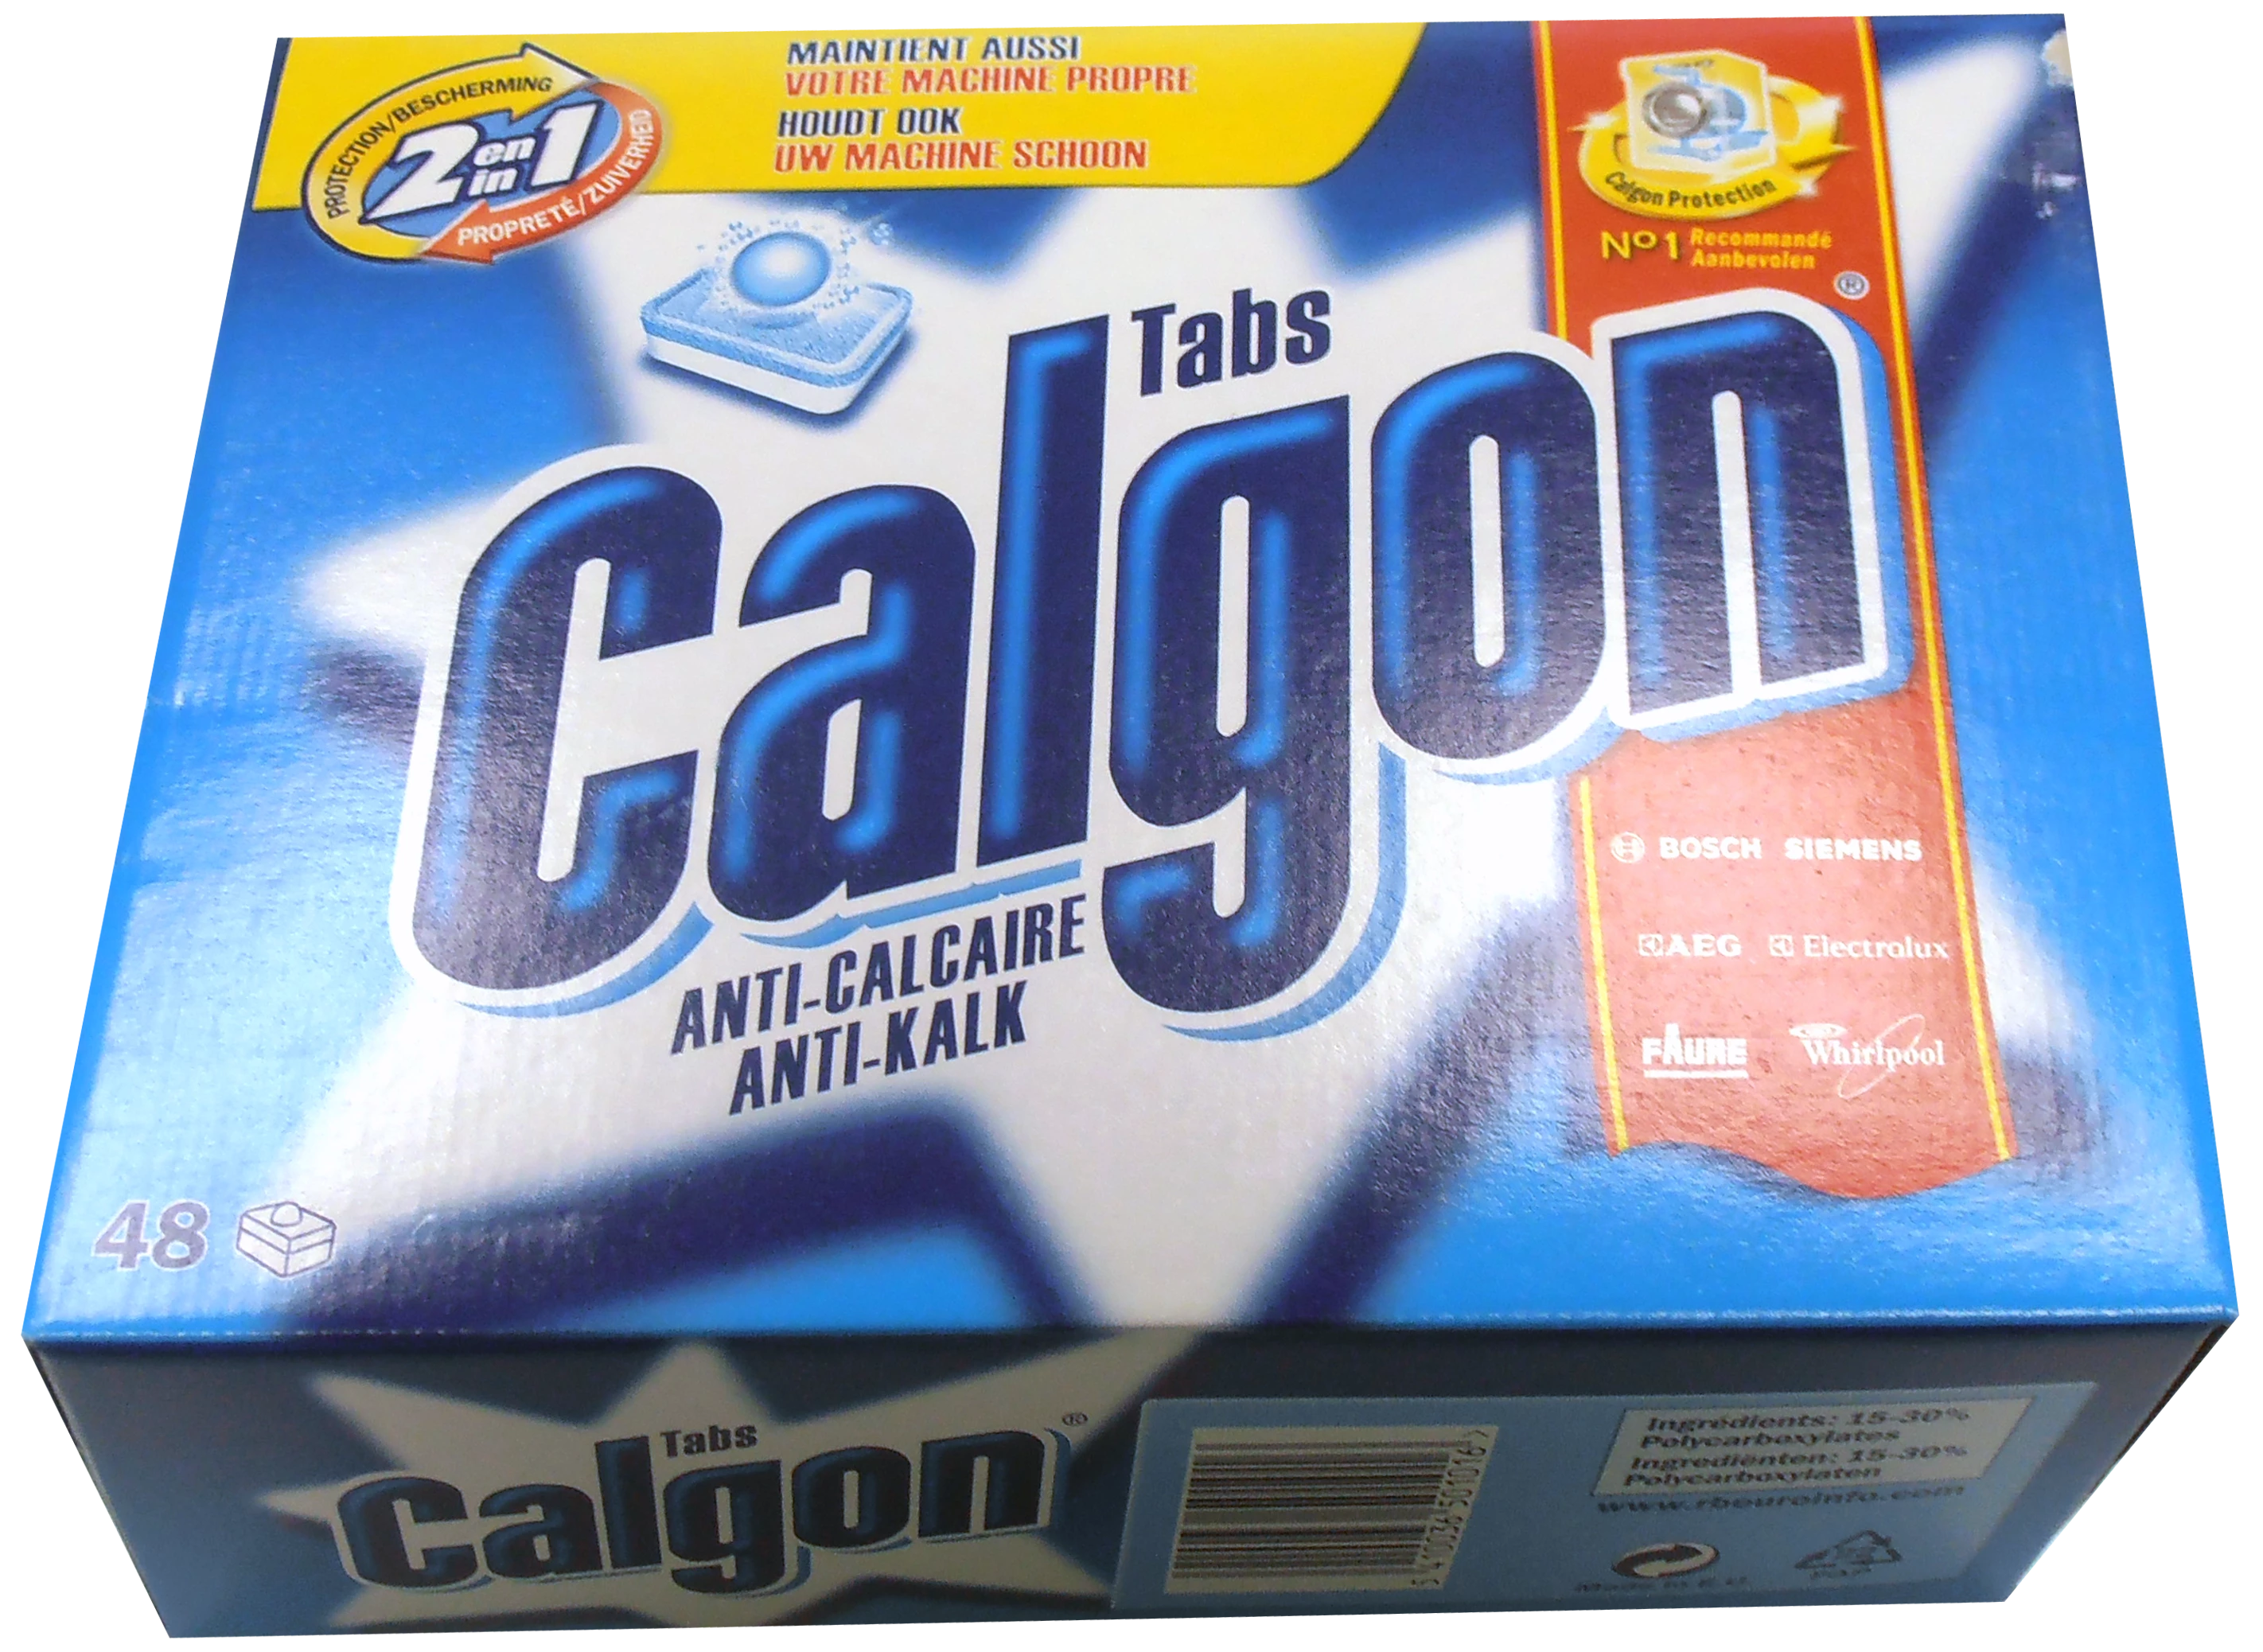 Calgon X48 Pastillas 2en1 720g